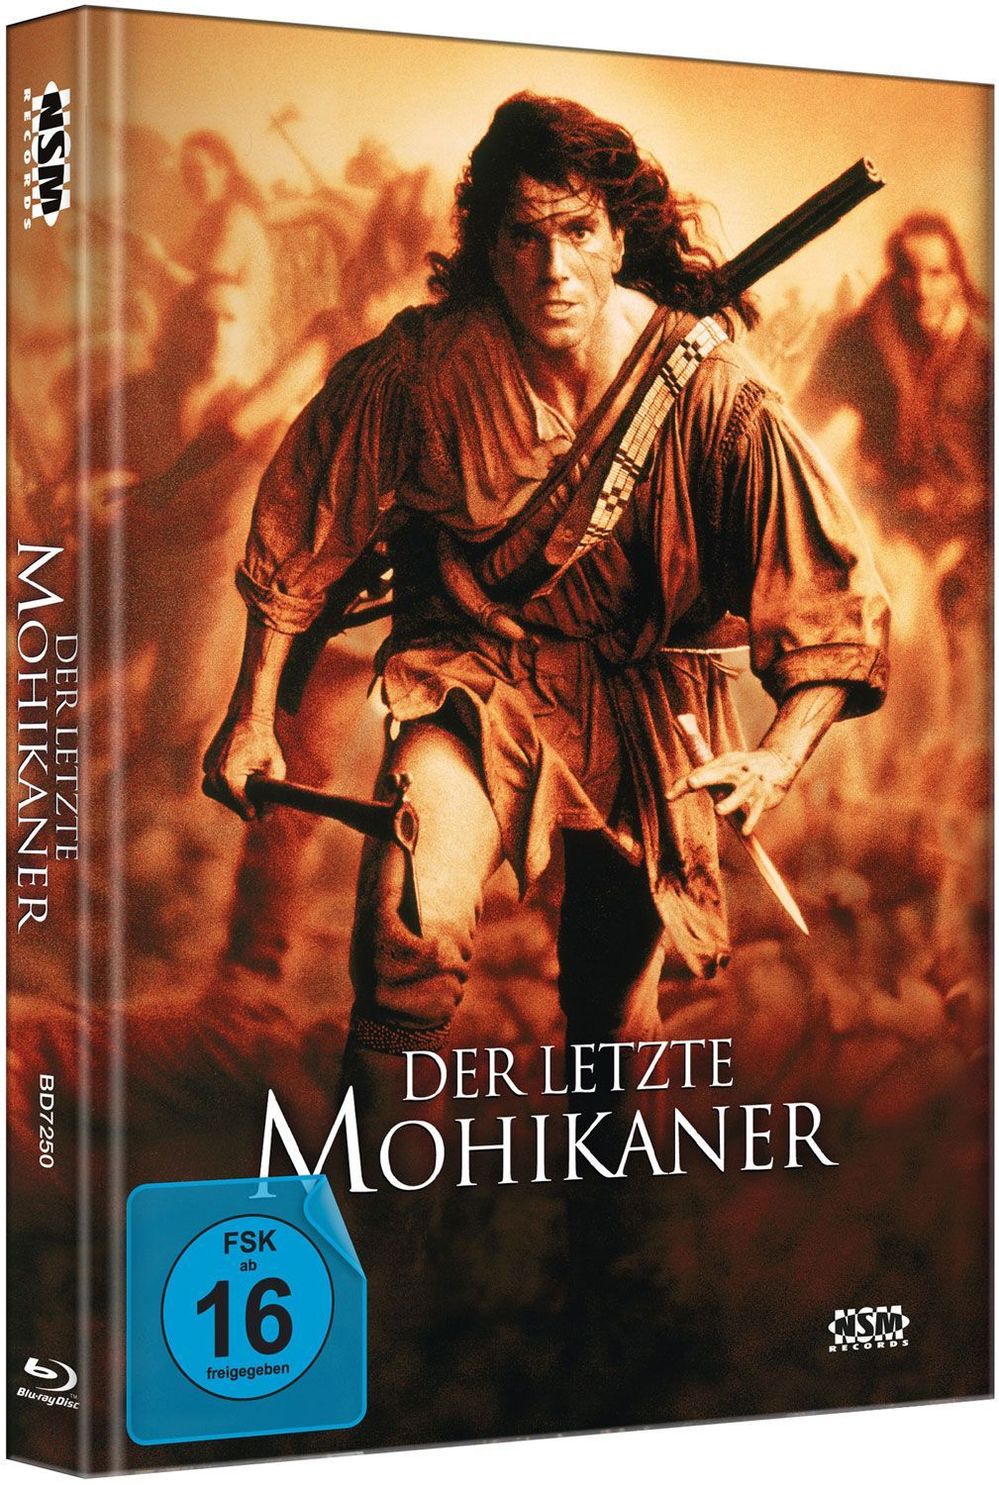 Der letzte Mohikaner - Mediabook Blu-ray bei Weltbild.at kaufen